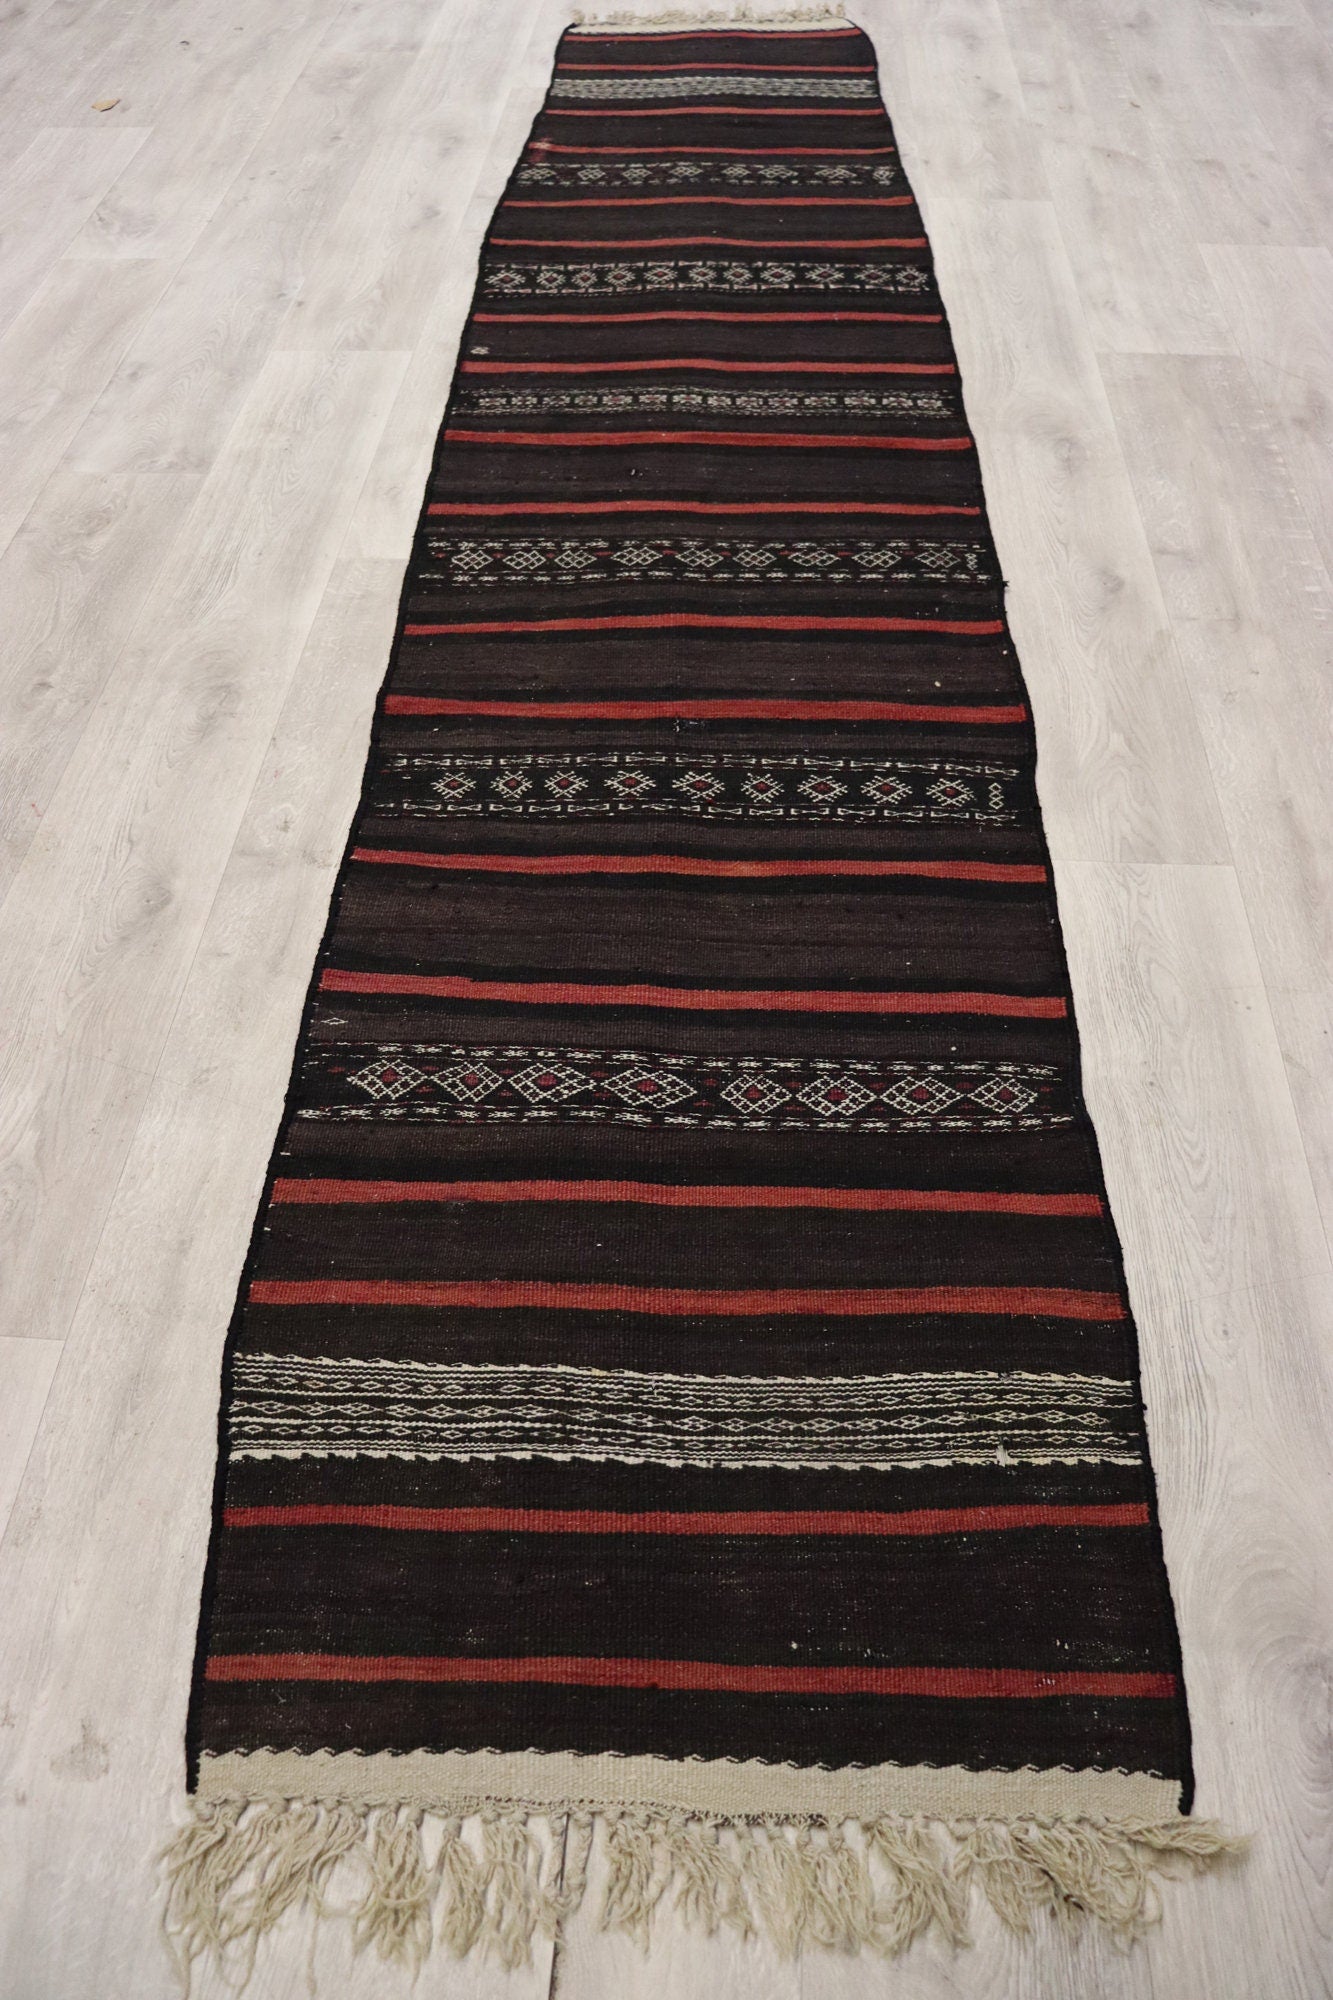 320x60 cm Antik orient handgewebte Teppich Nomaden Balouch sumakh kelim afghan Beloch Flur teppich Läufer kilim Nr- 407  Orientsbazar   